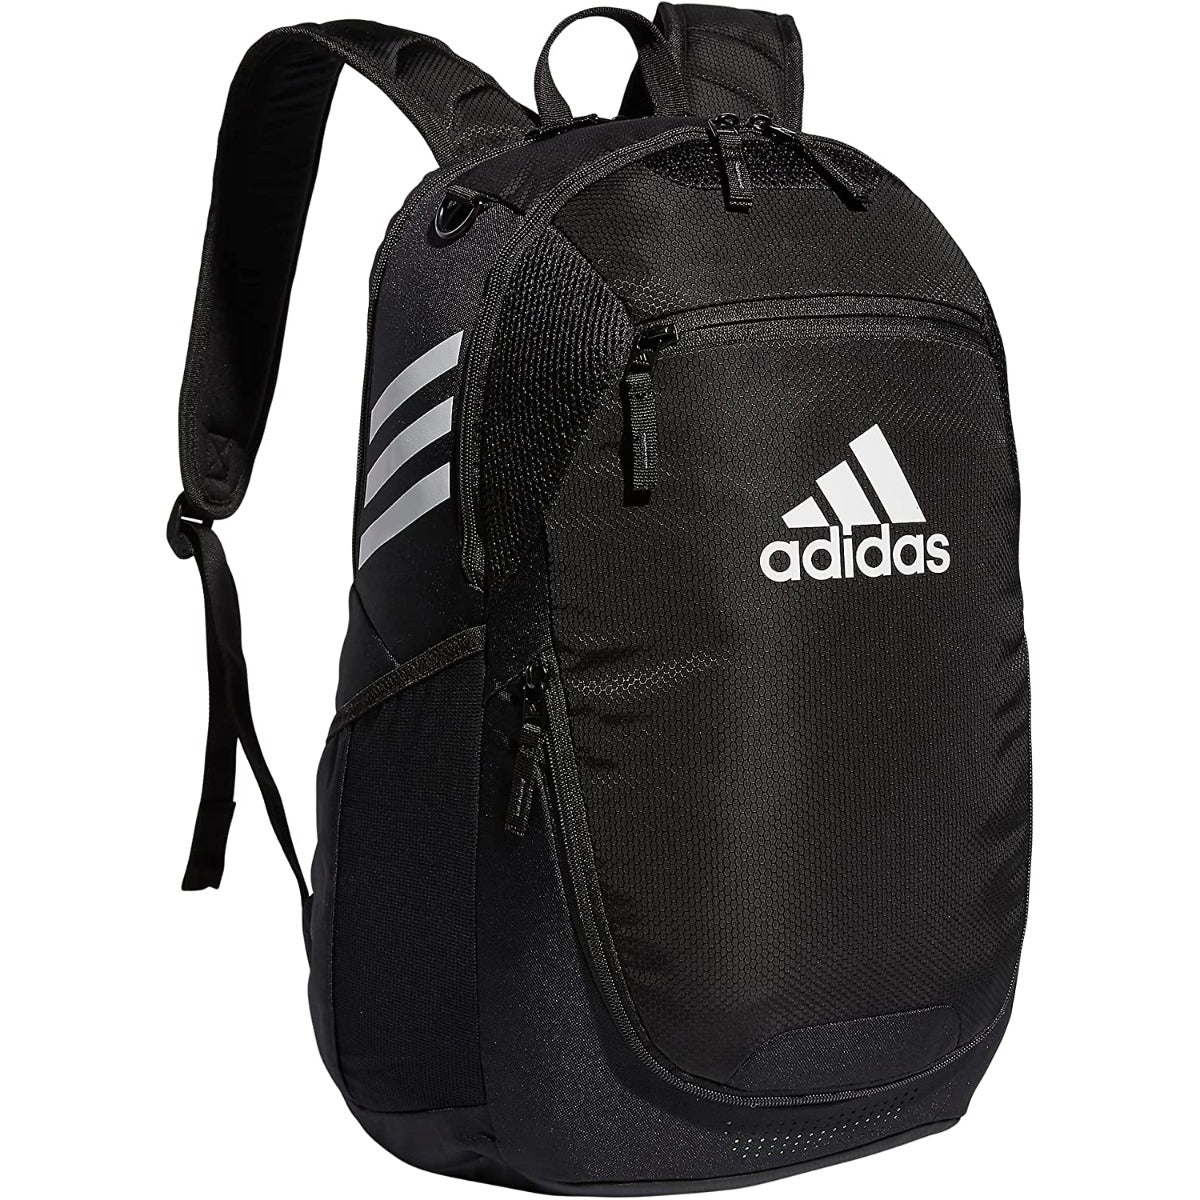 adidas Stadium 3 Backpack Black (Front)